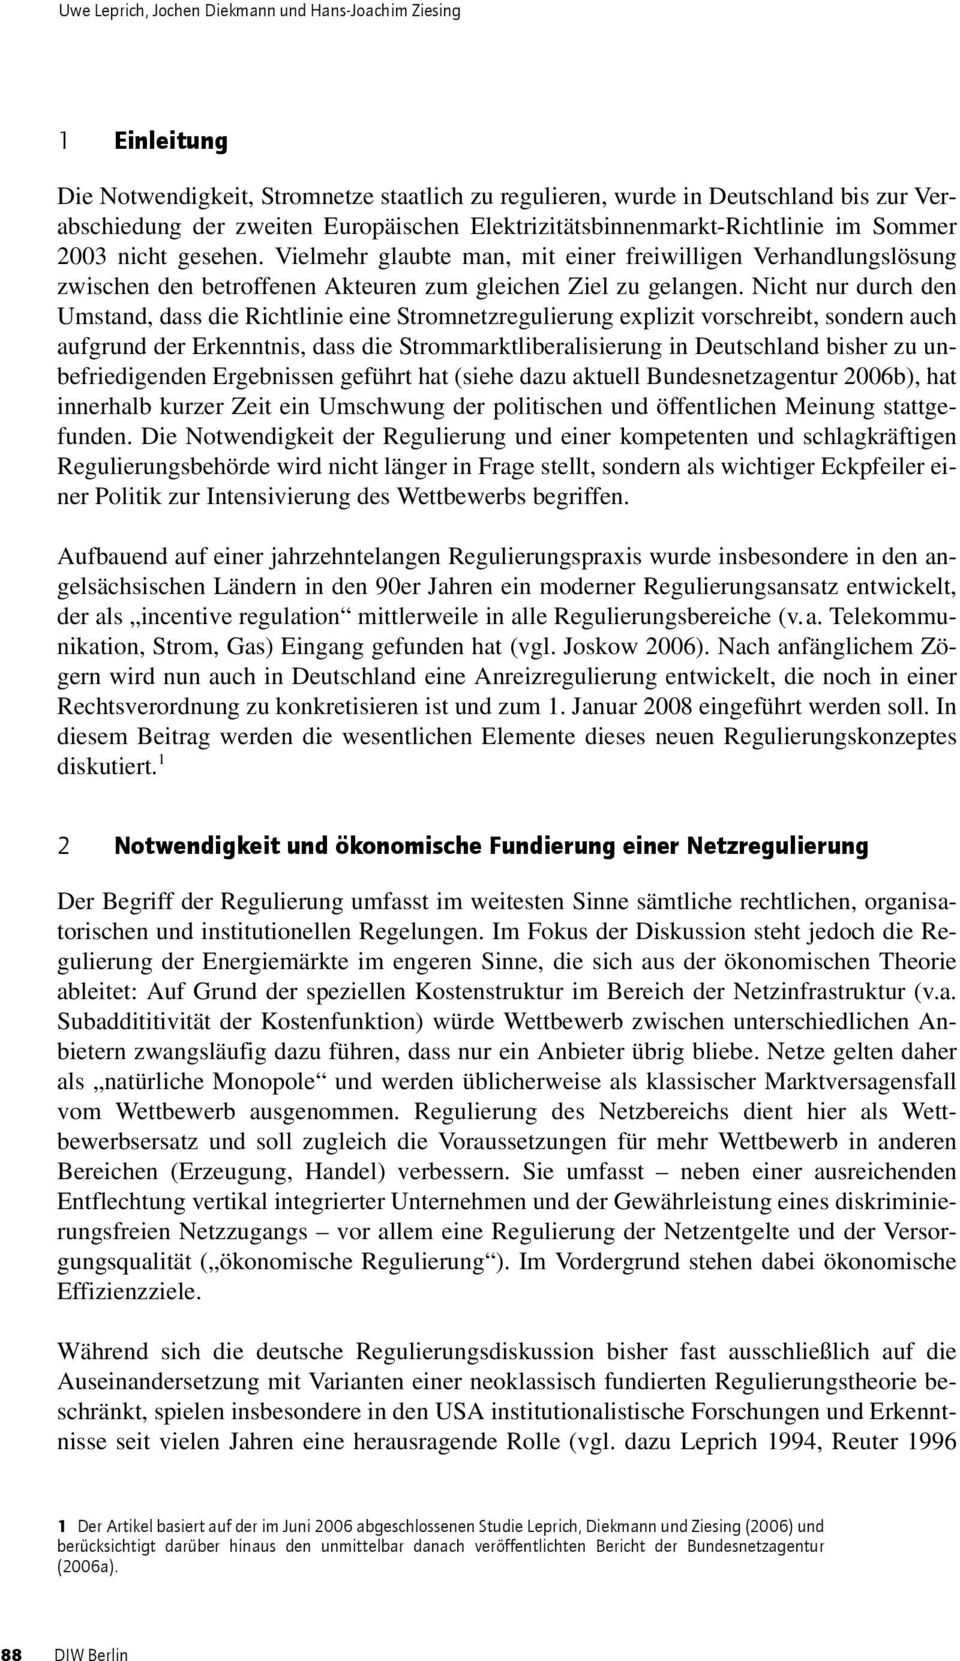 Nicht nur durch den Umstand, dass die Richtlinie eine Stromnetzregulierung explizit vorschreibt, sondern auch aufgrund der Erkenntnis, dass die Strommarktliberalisierung in Deutschland bisher zu